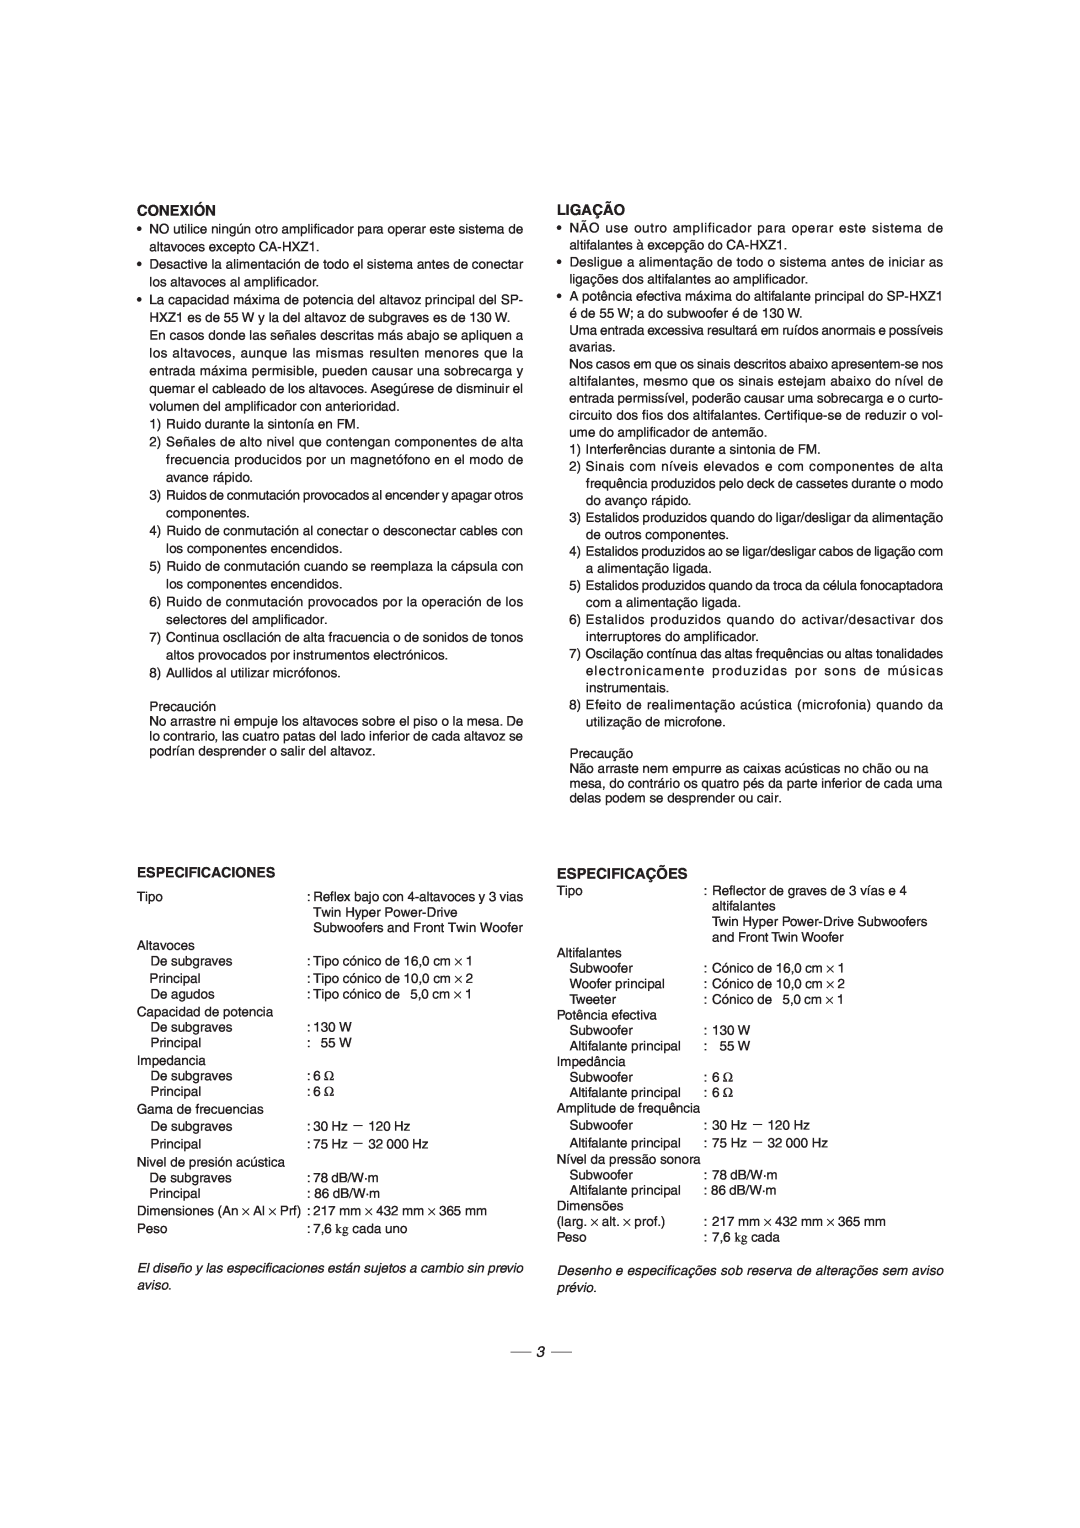 JVC CA-HXZ1R manual Conexión, Ligação, Especificaciones, Especificações 